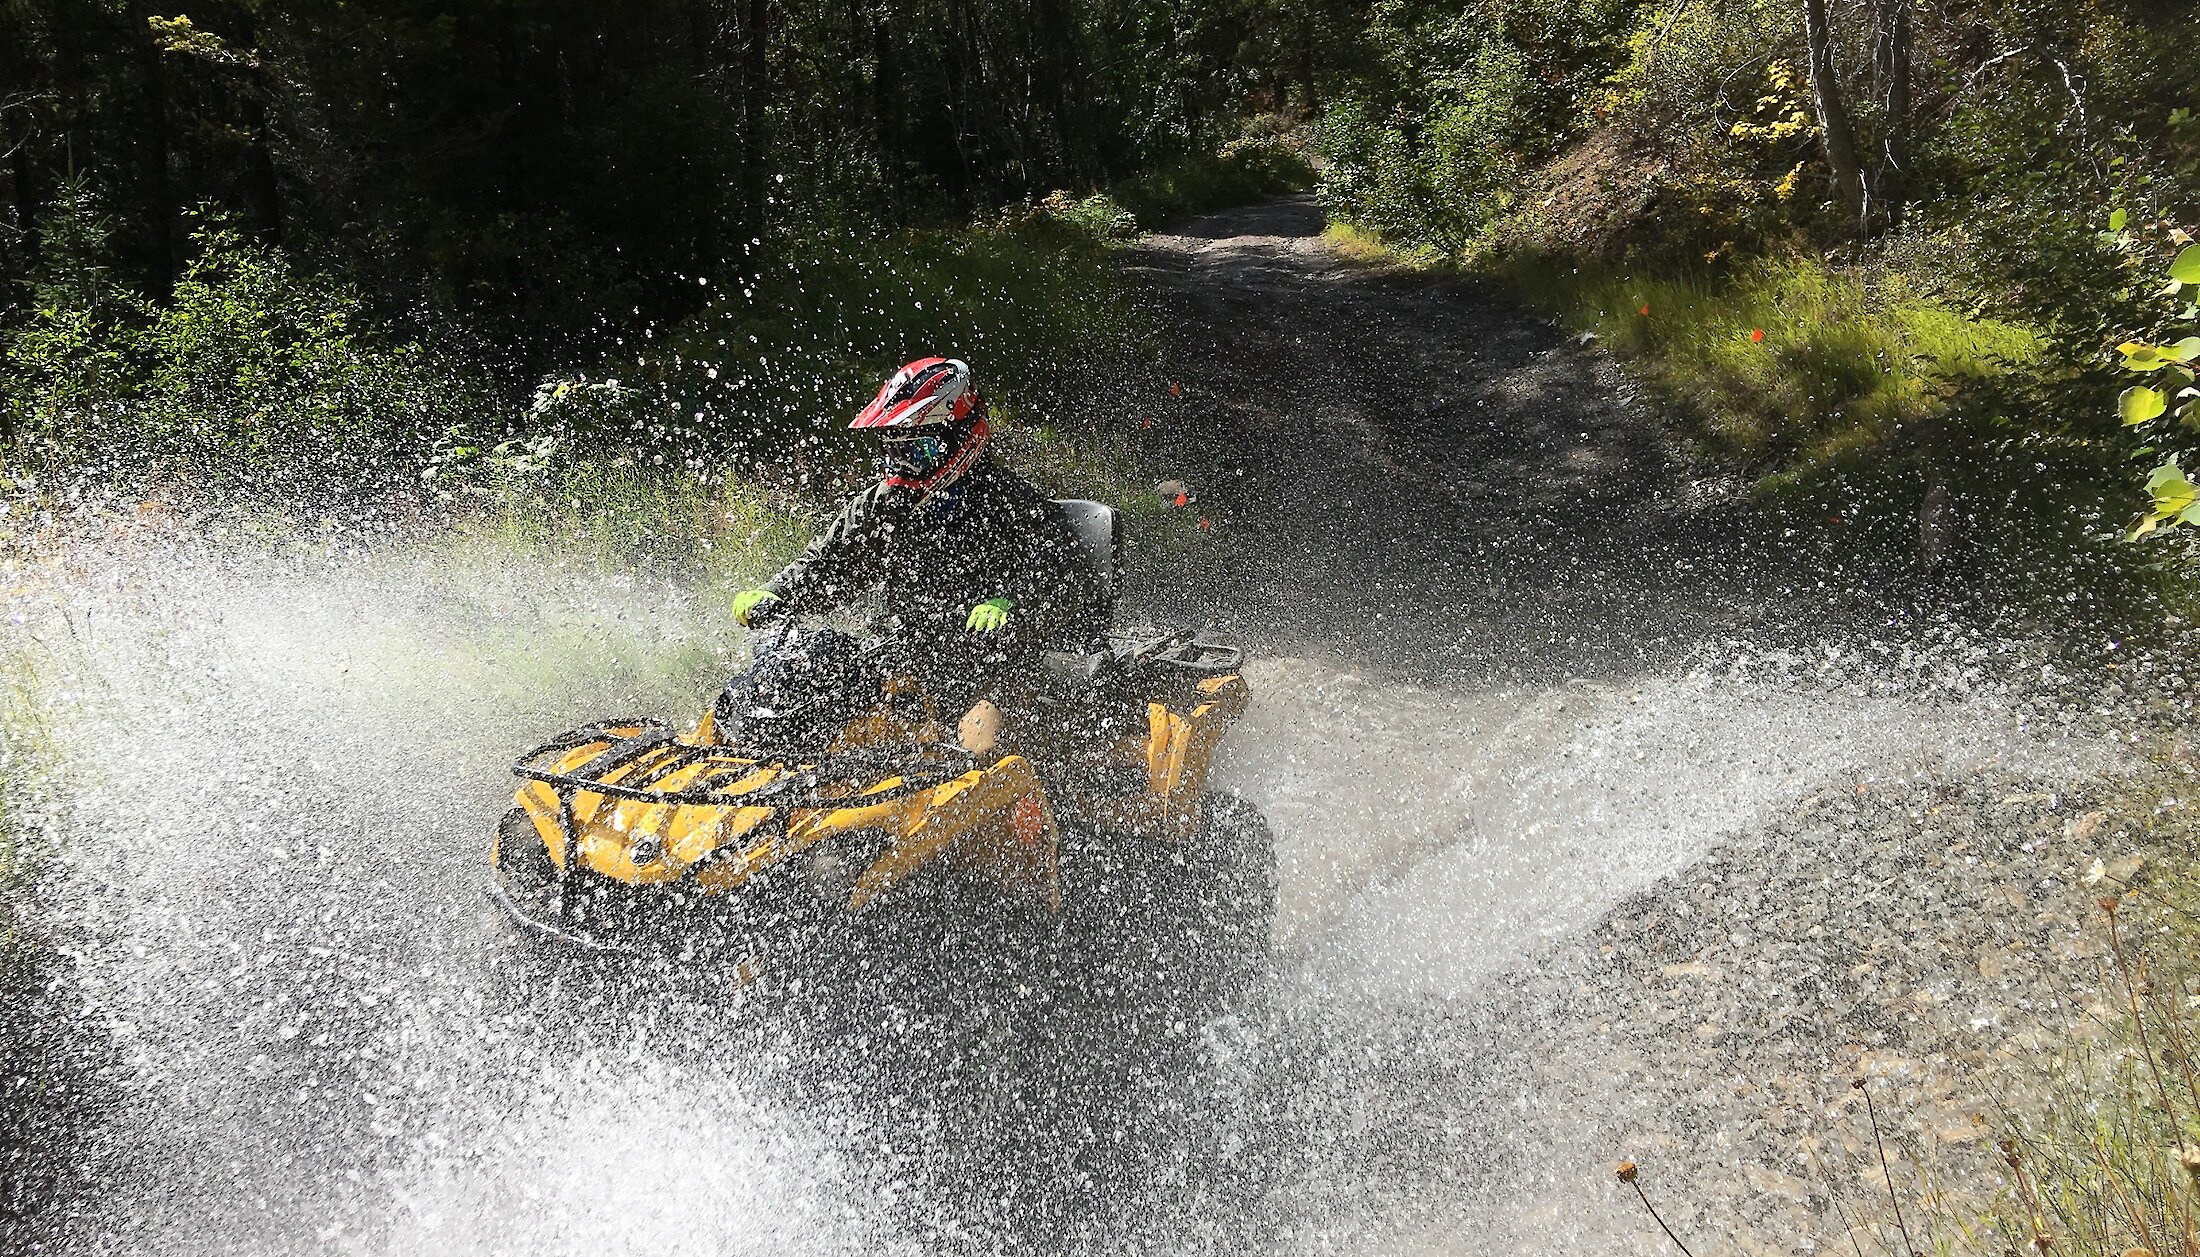 ATV splashing through a river on an ATV tour